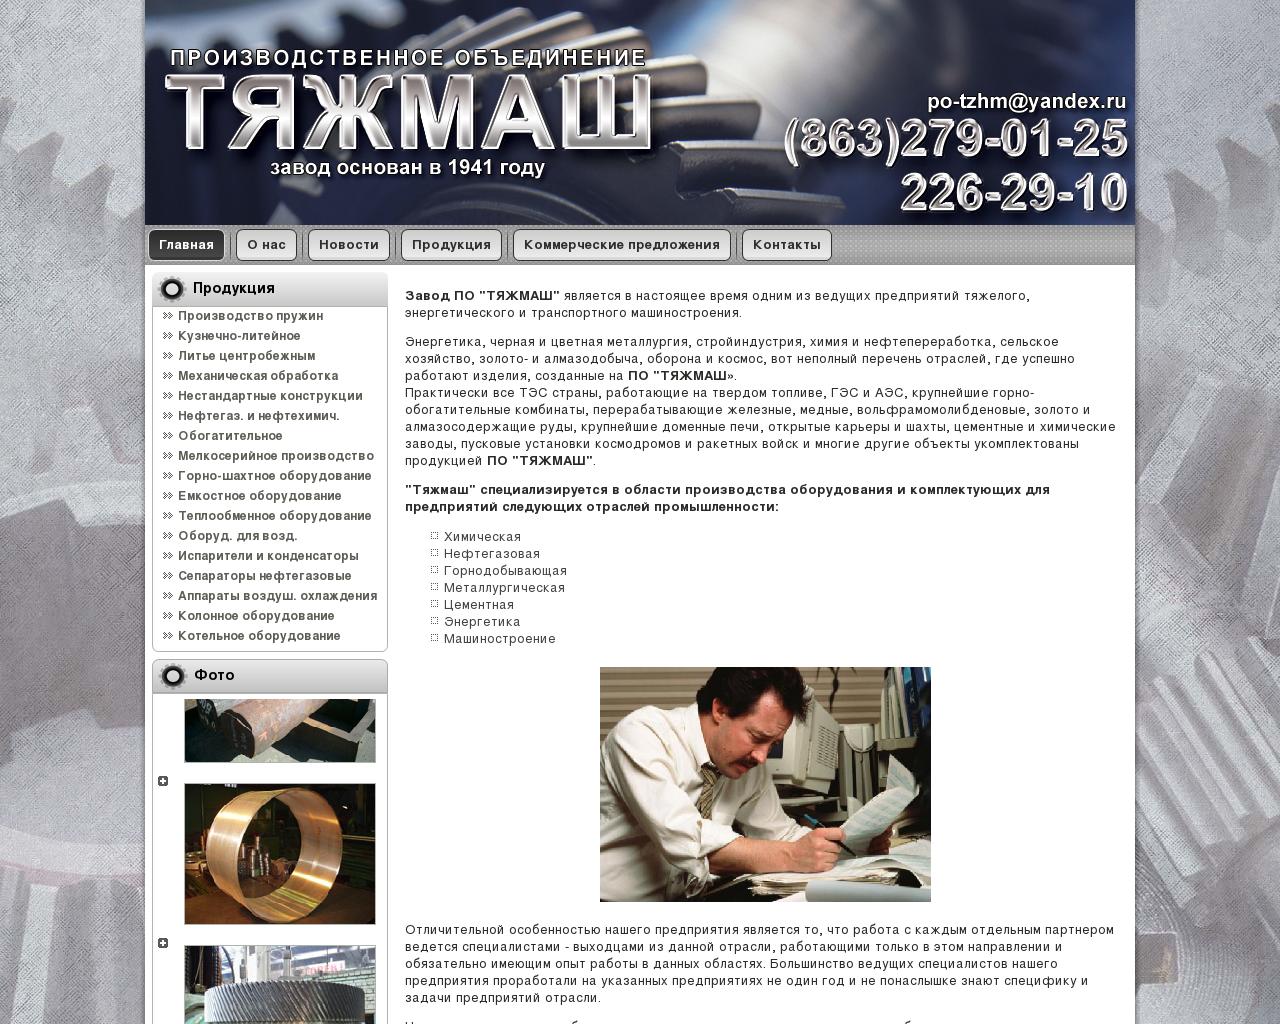 Изображение сайта po-tzhm.ru в разрешении 1280x1024